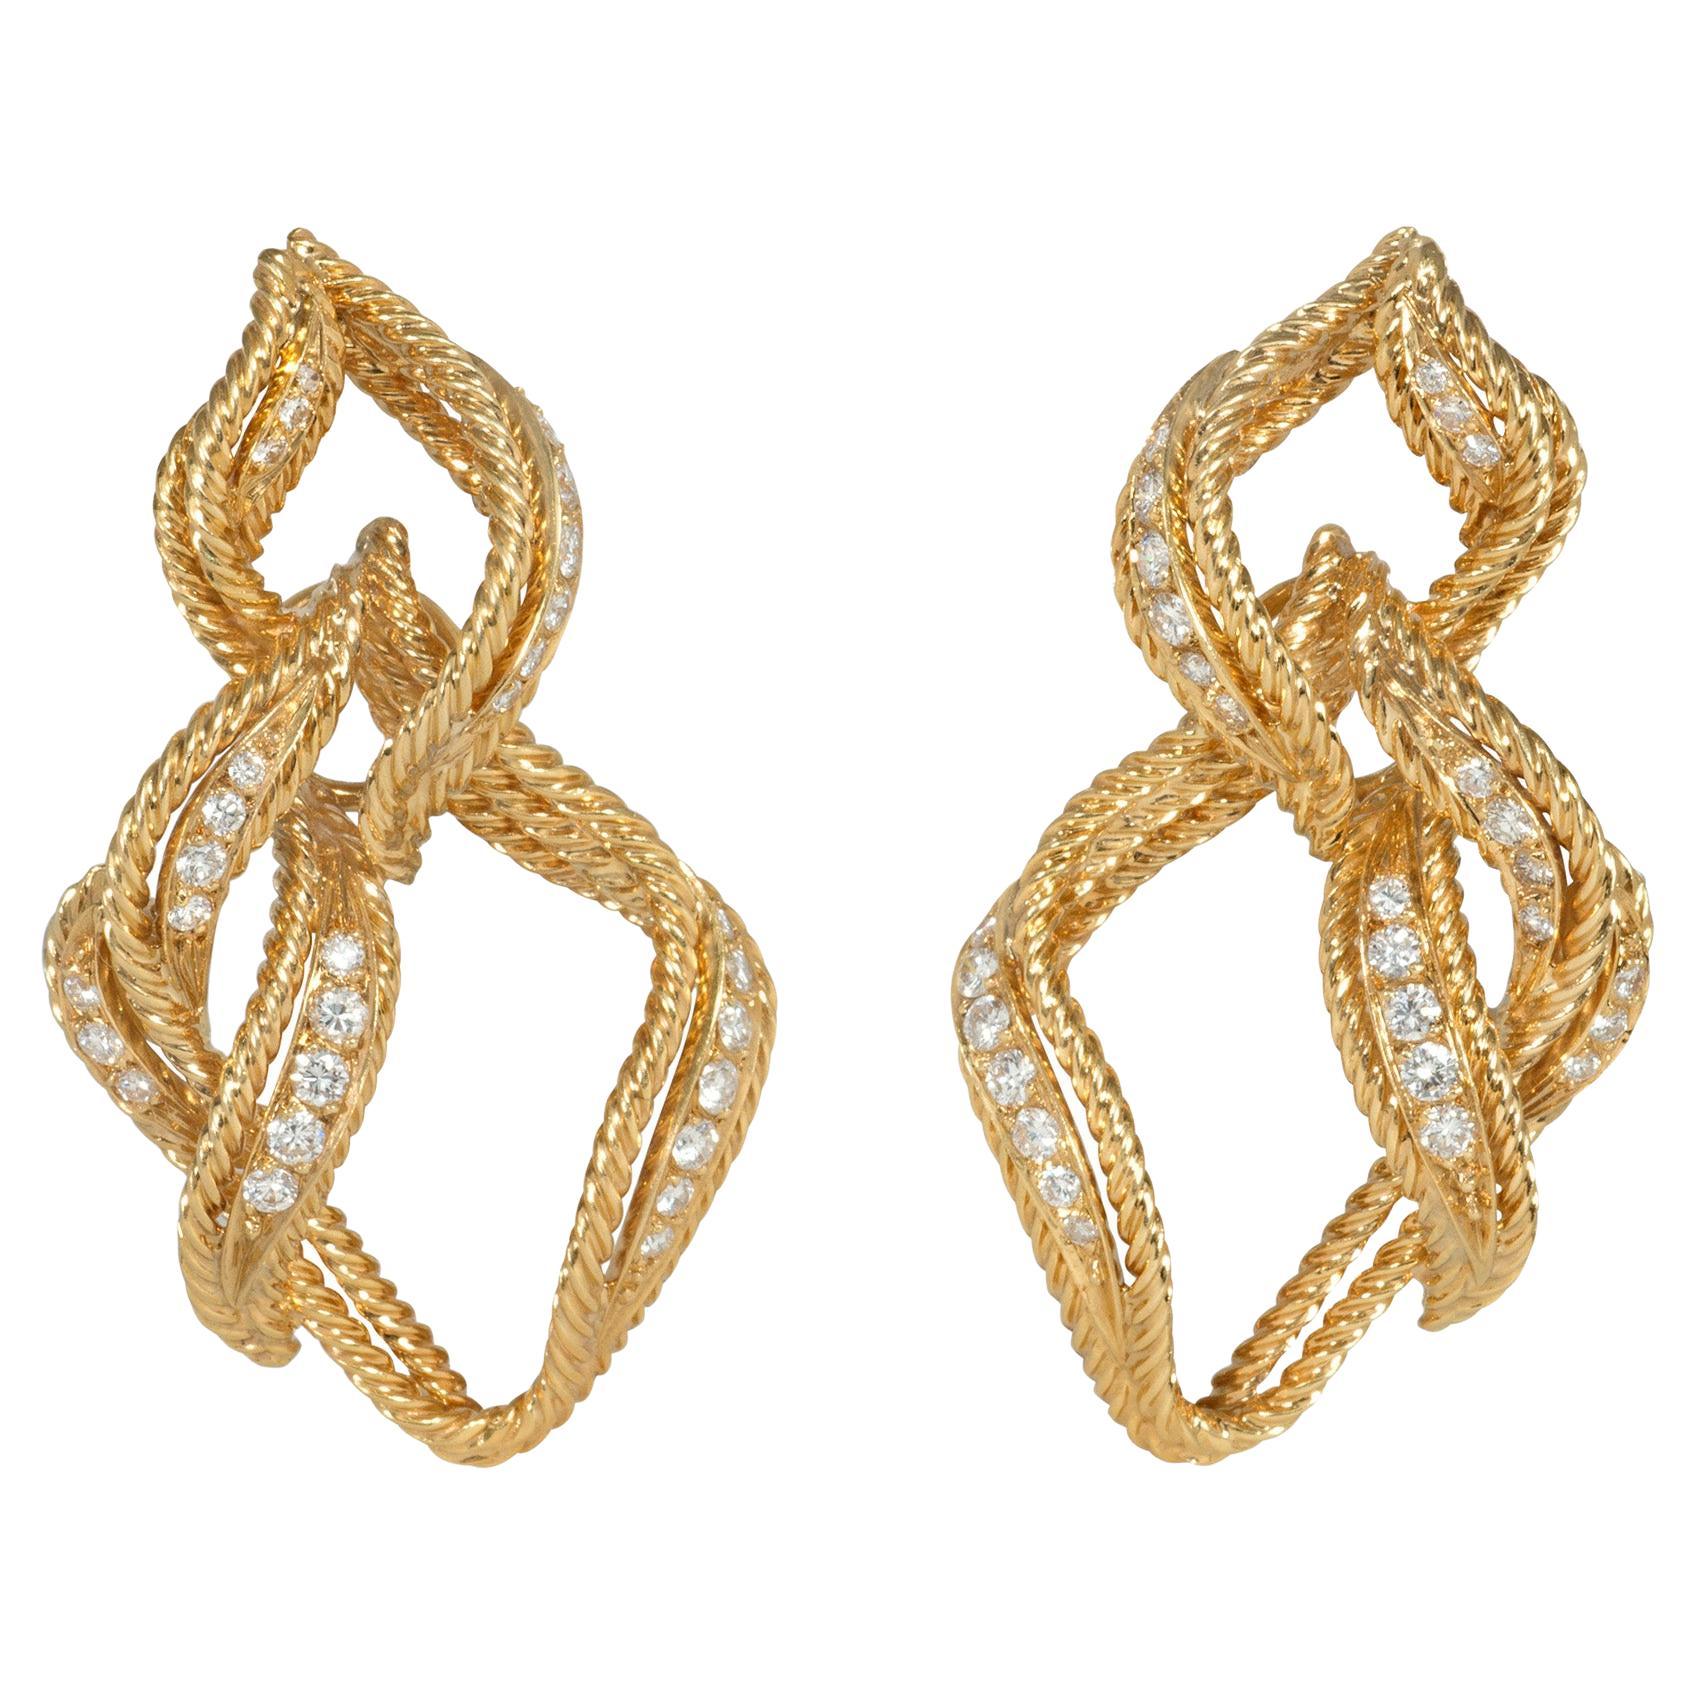 Chaumet, clips d'oreilles en forme de flamme stylisés en or et diamants, Paris